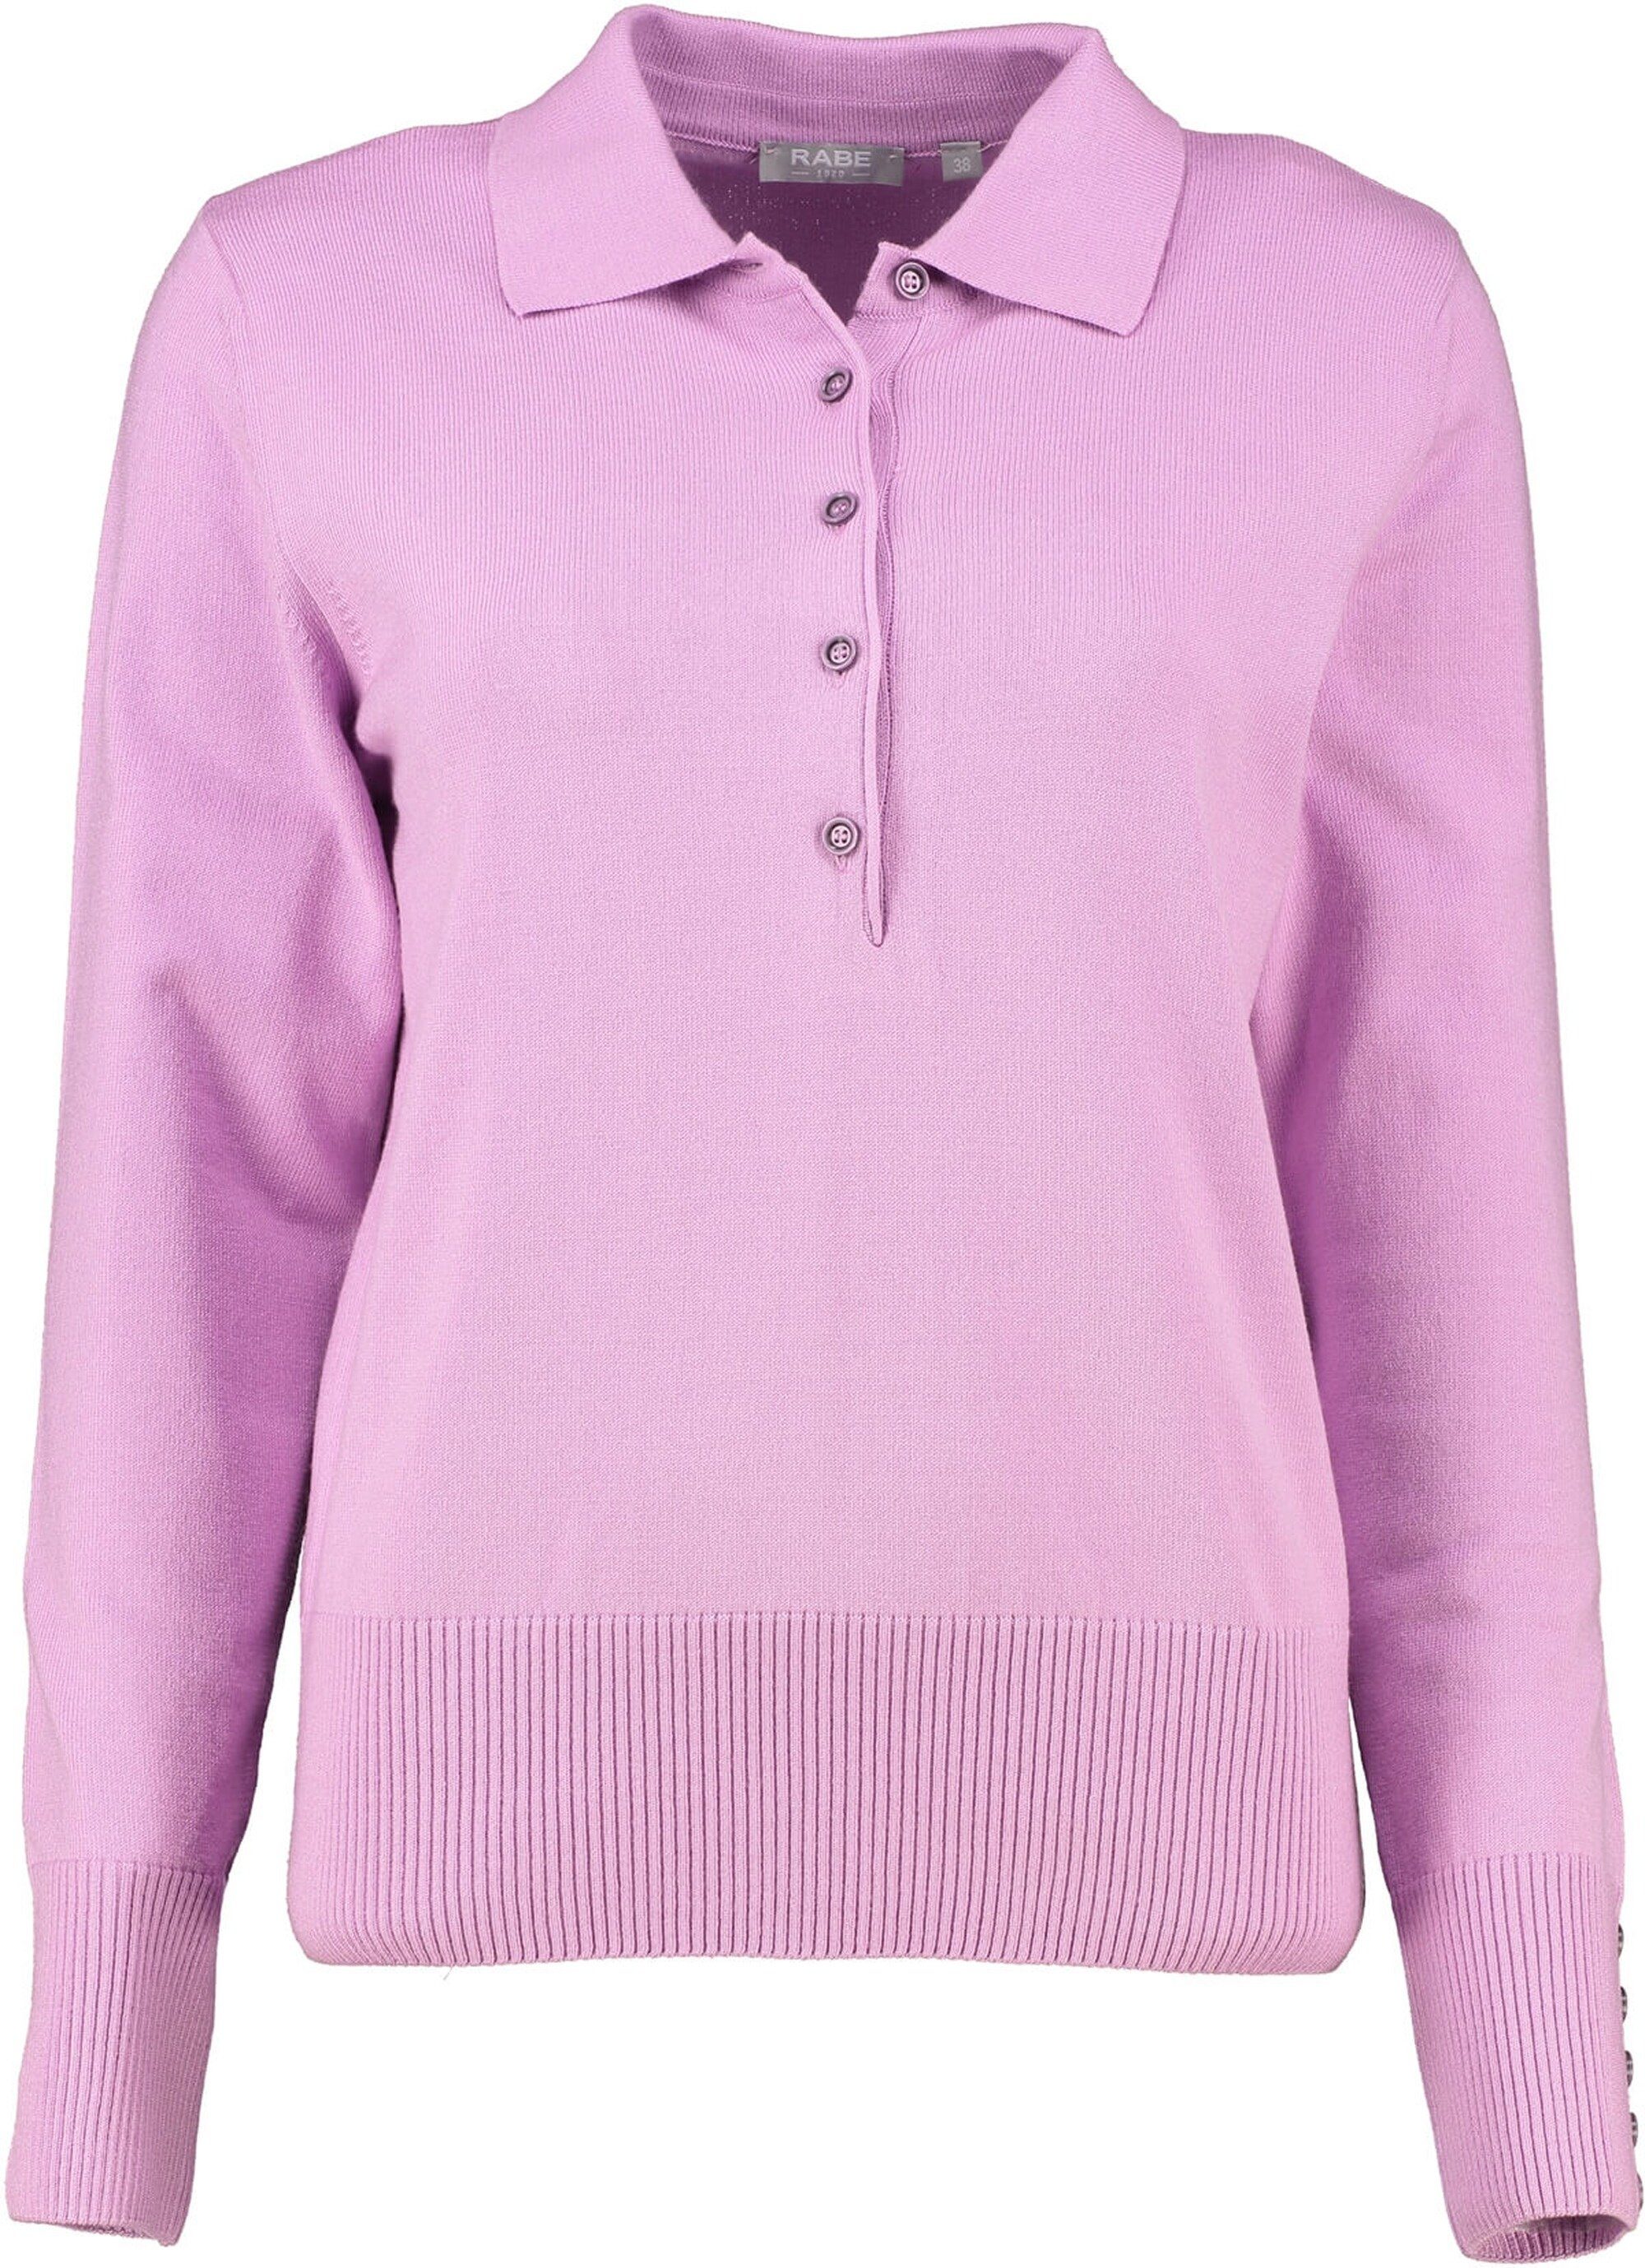 Rabe Strickpullover RABE Pullover violett in einzigartiger Qualität Rosa | Strickpullover